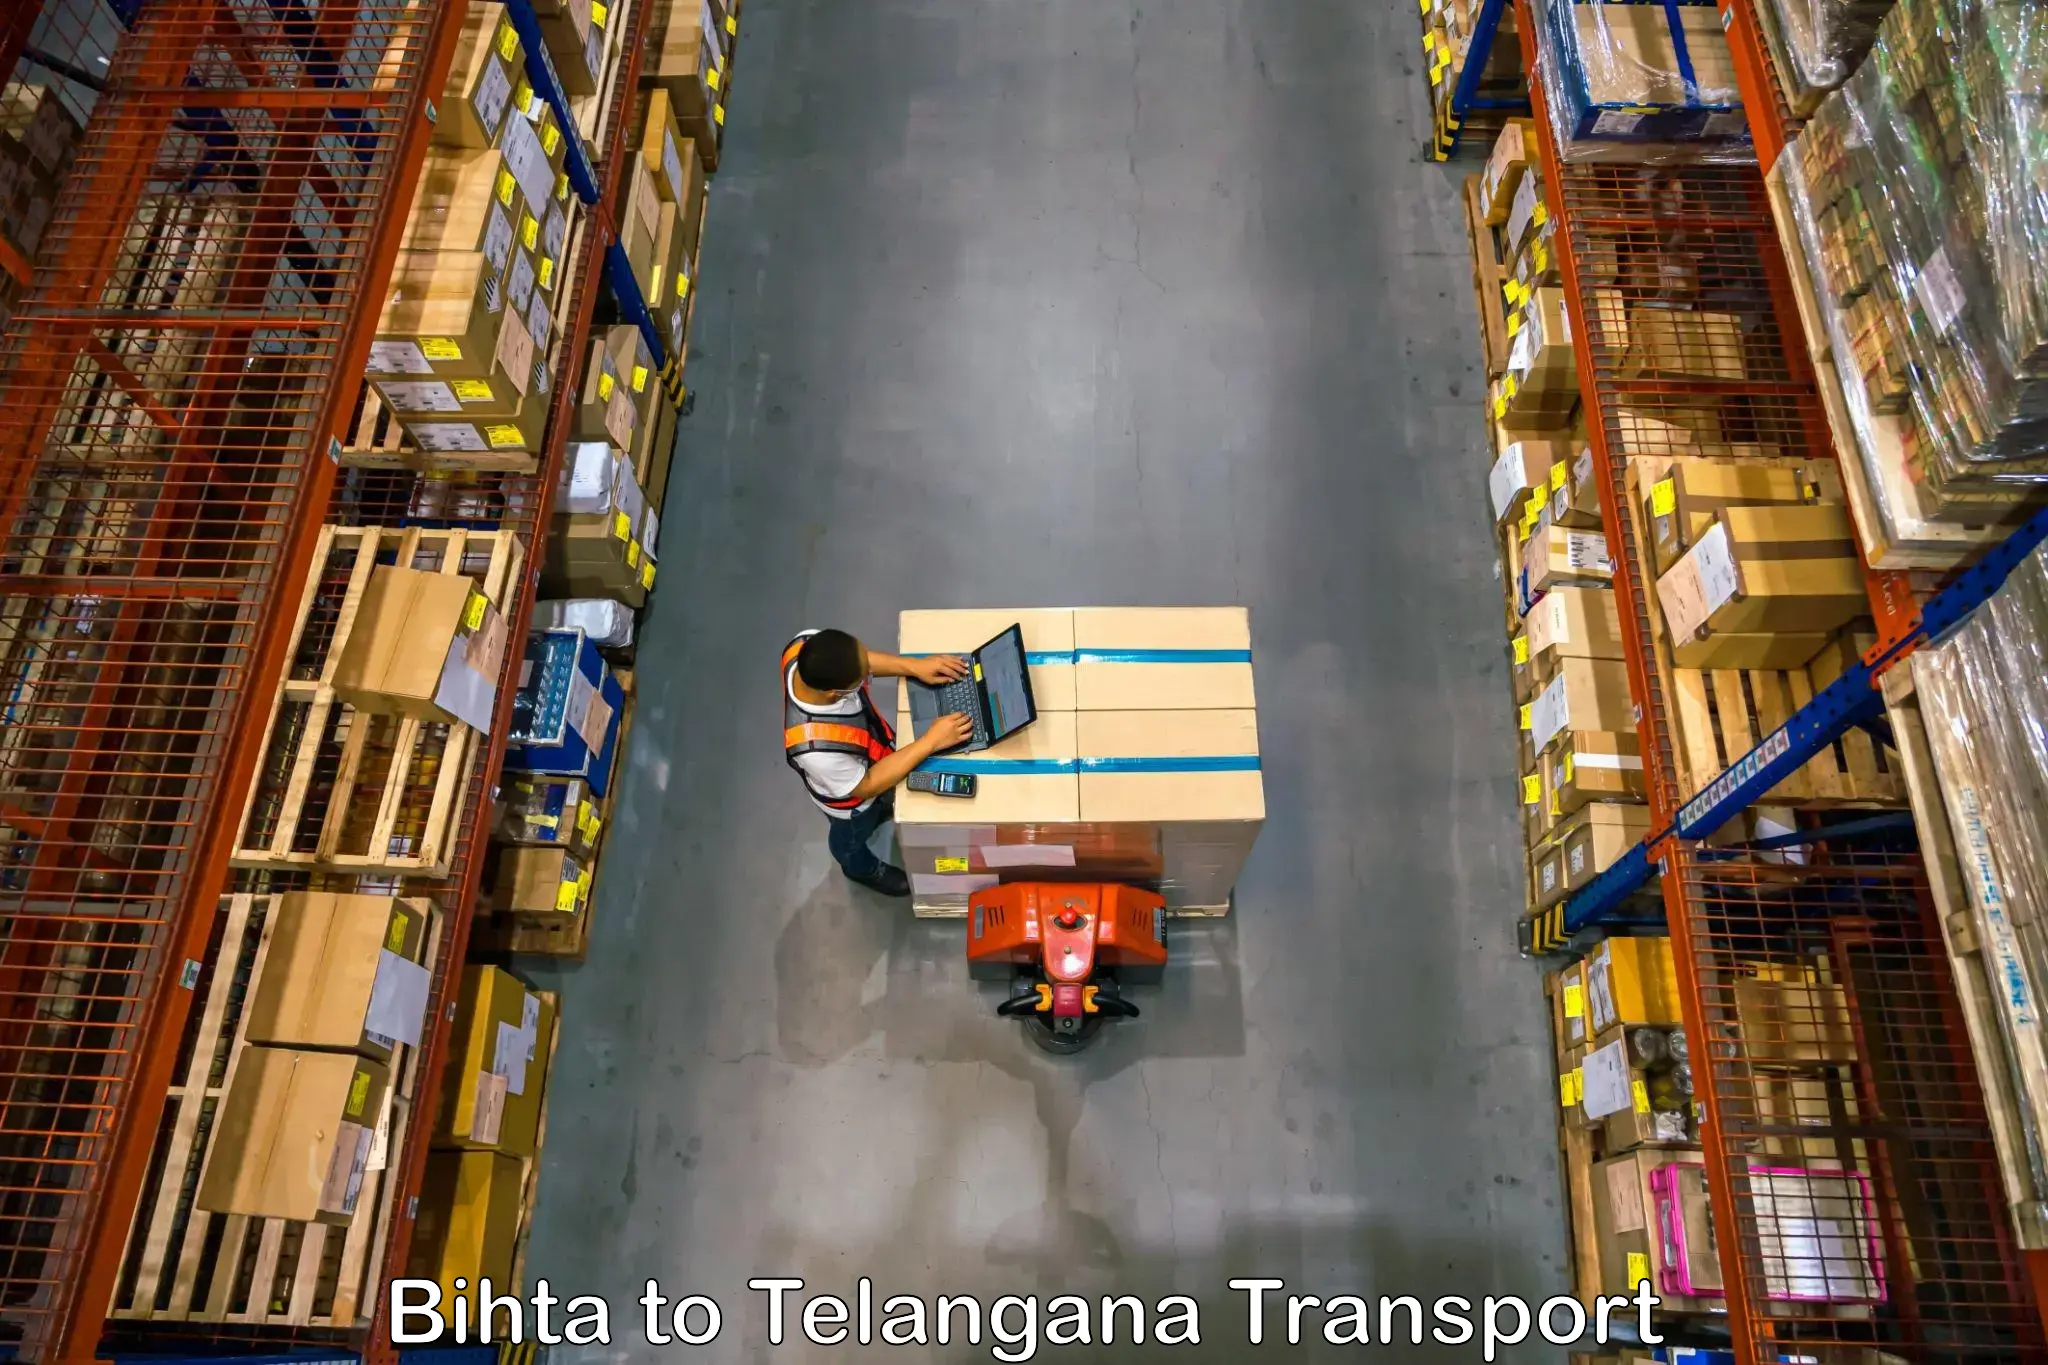 Container transport service Bihta to Madhira